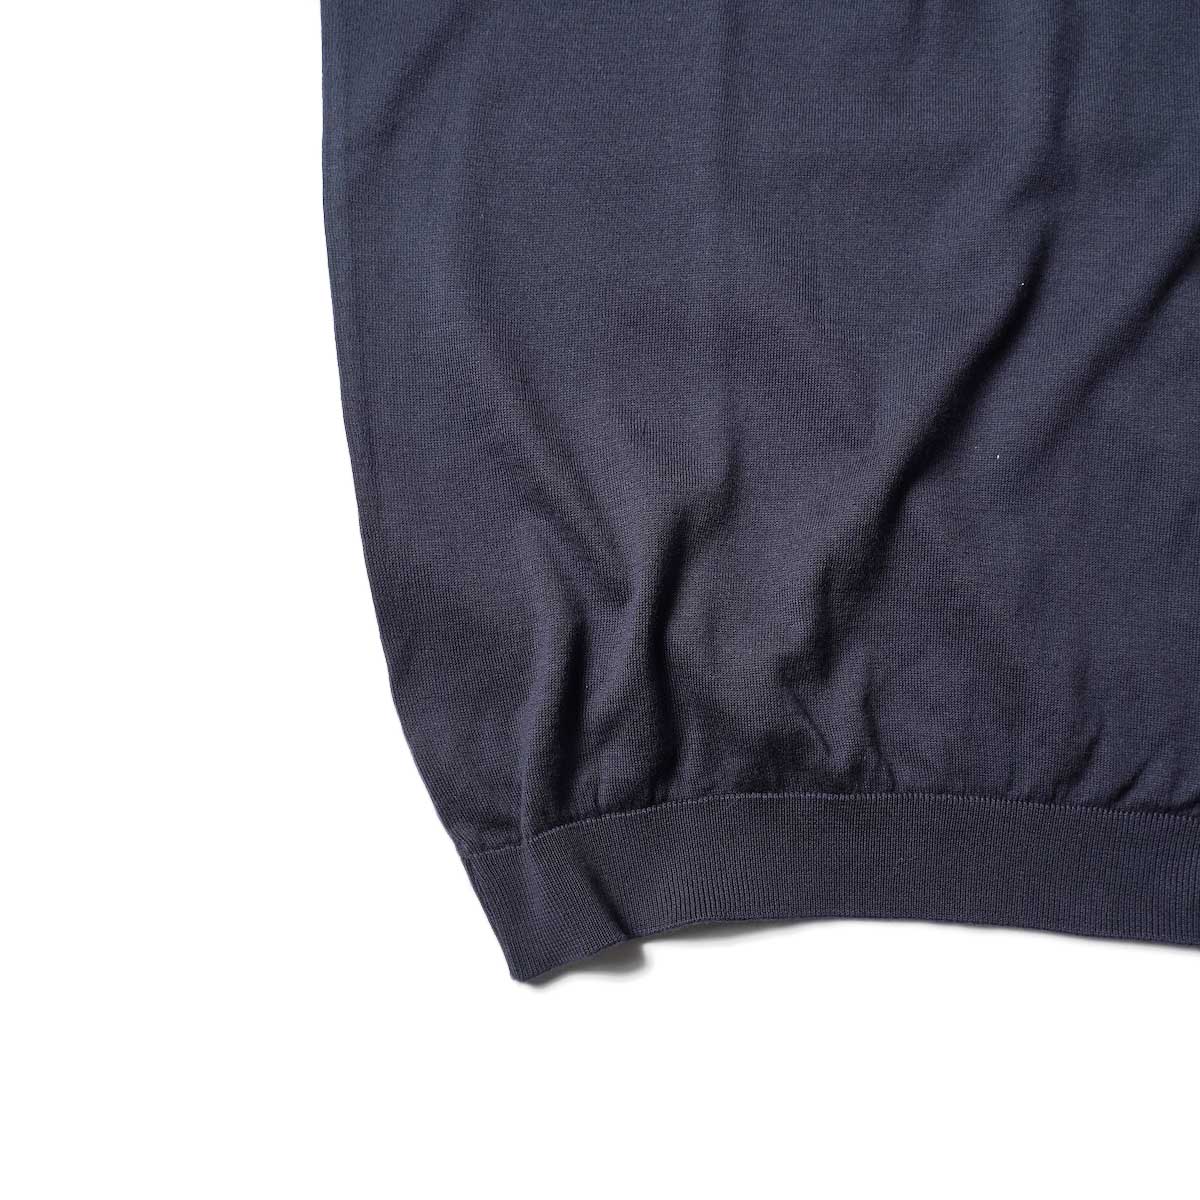 JOHN SMEDLEY / ISIS S/S Knit Polo (Navy)裾